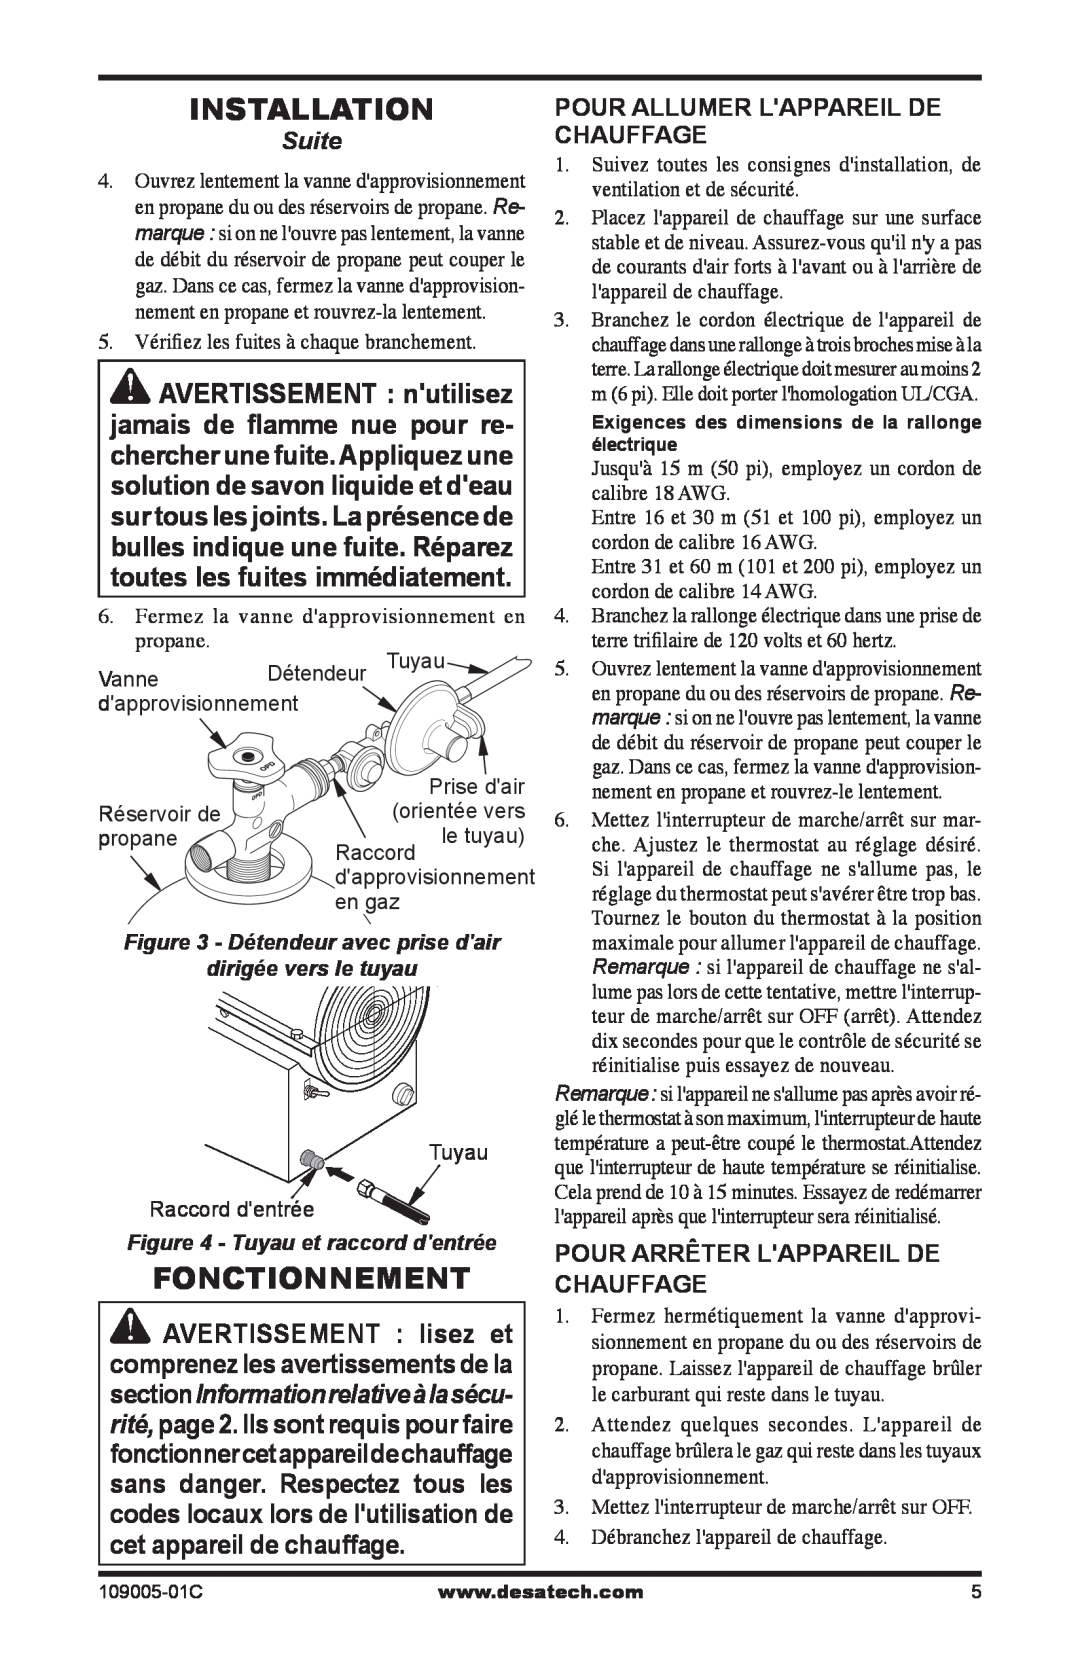 Desa RCLP155AT owner manual Installation, Suite, Pour Allumer Lappareil De Chauffage, Pour Arrêter Lappareil De Chauffage 